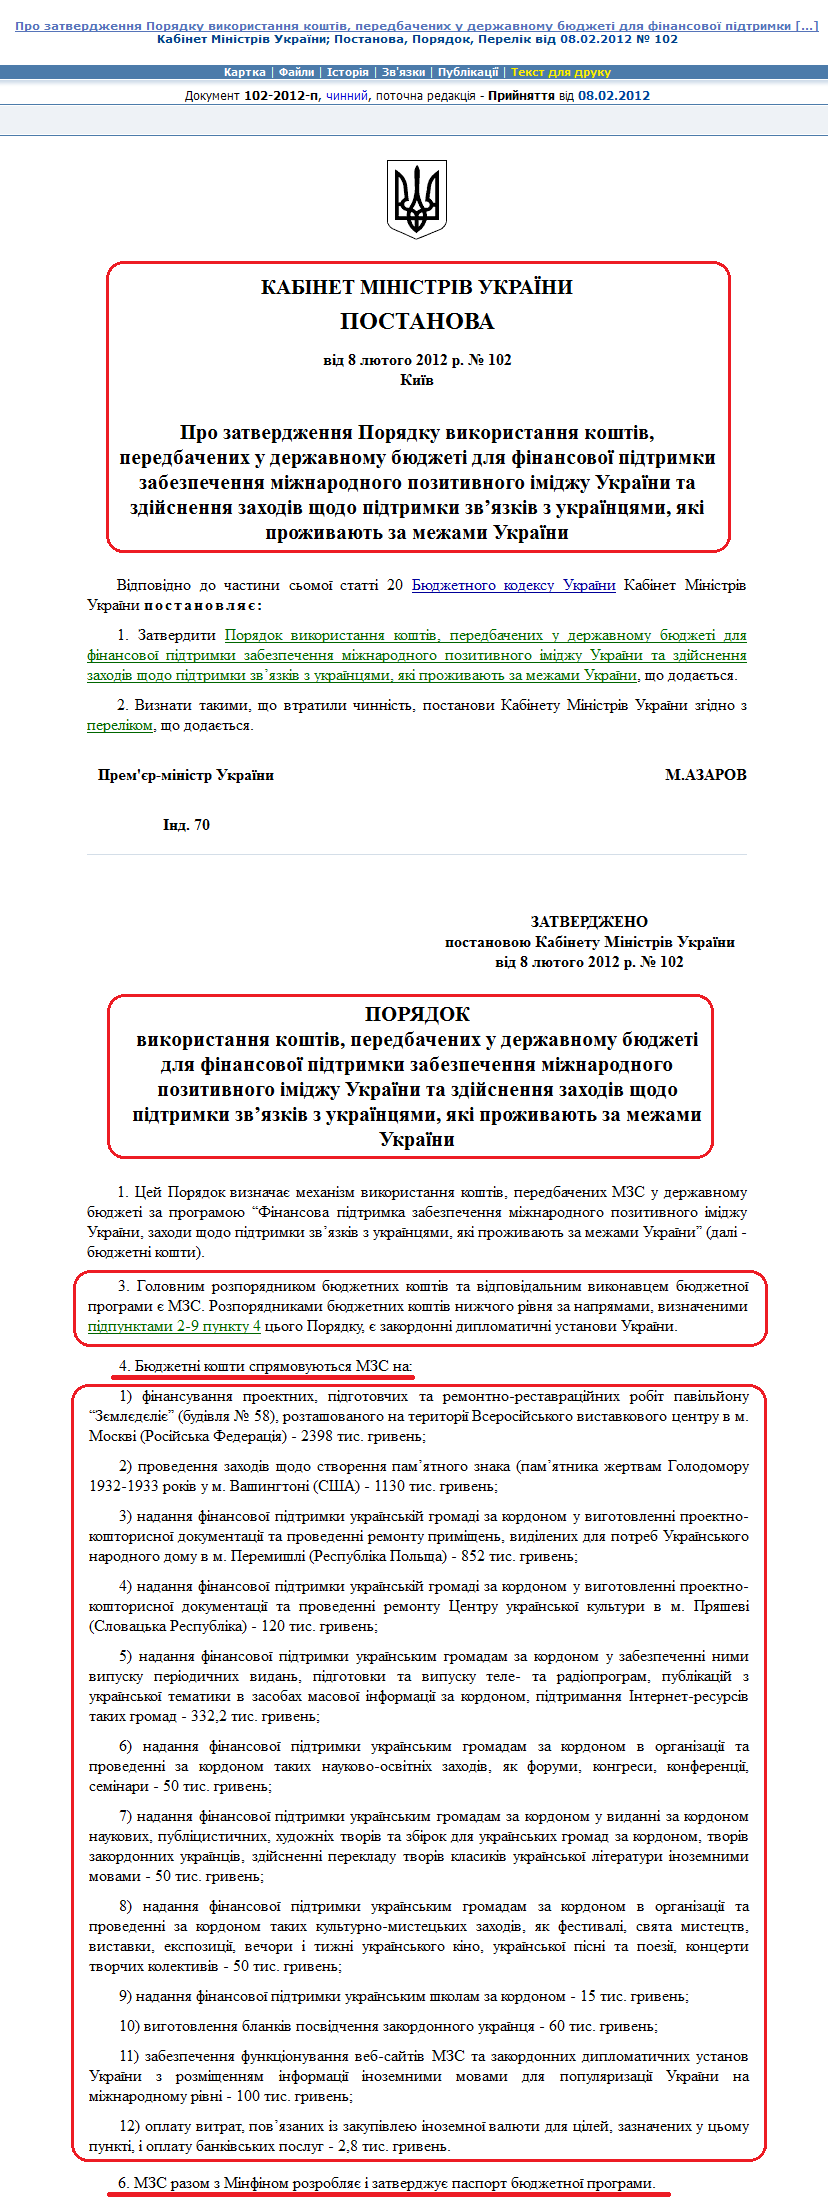 http://zakon2.rada.gov.ua/laws/show/102-2012-%D0%BF